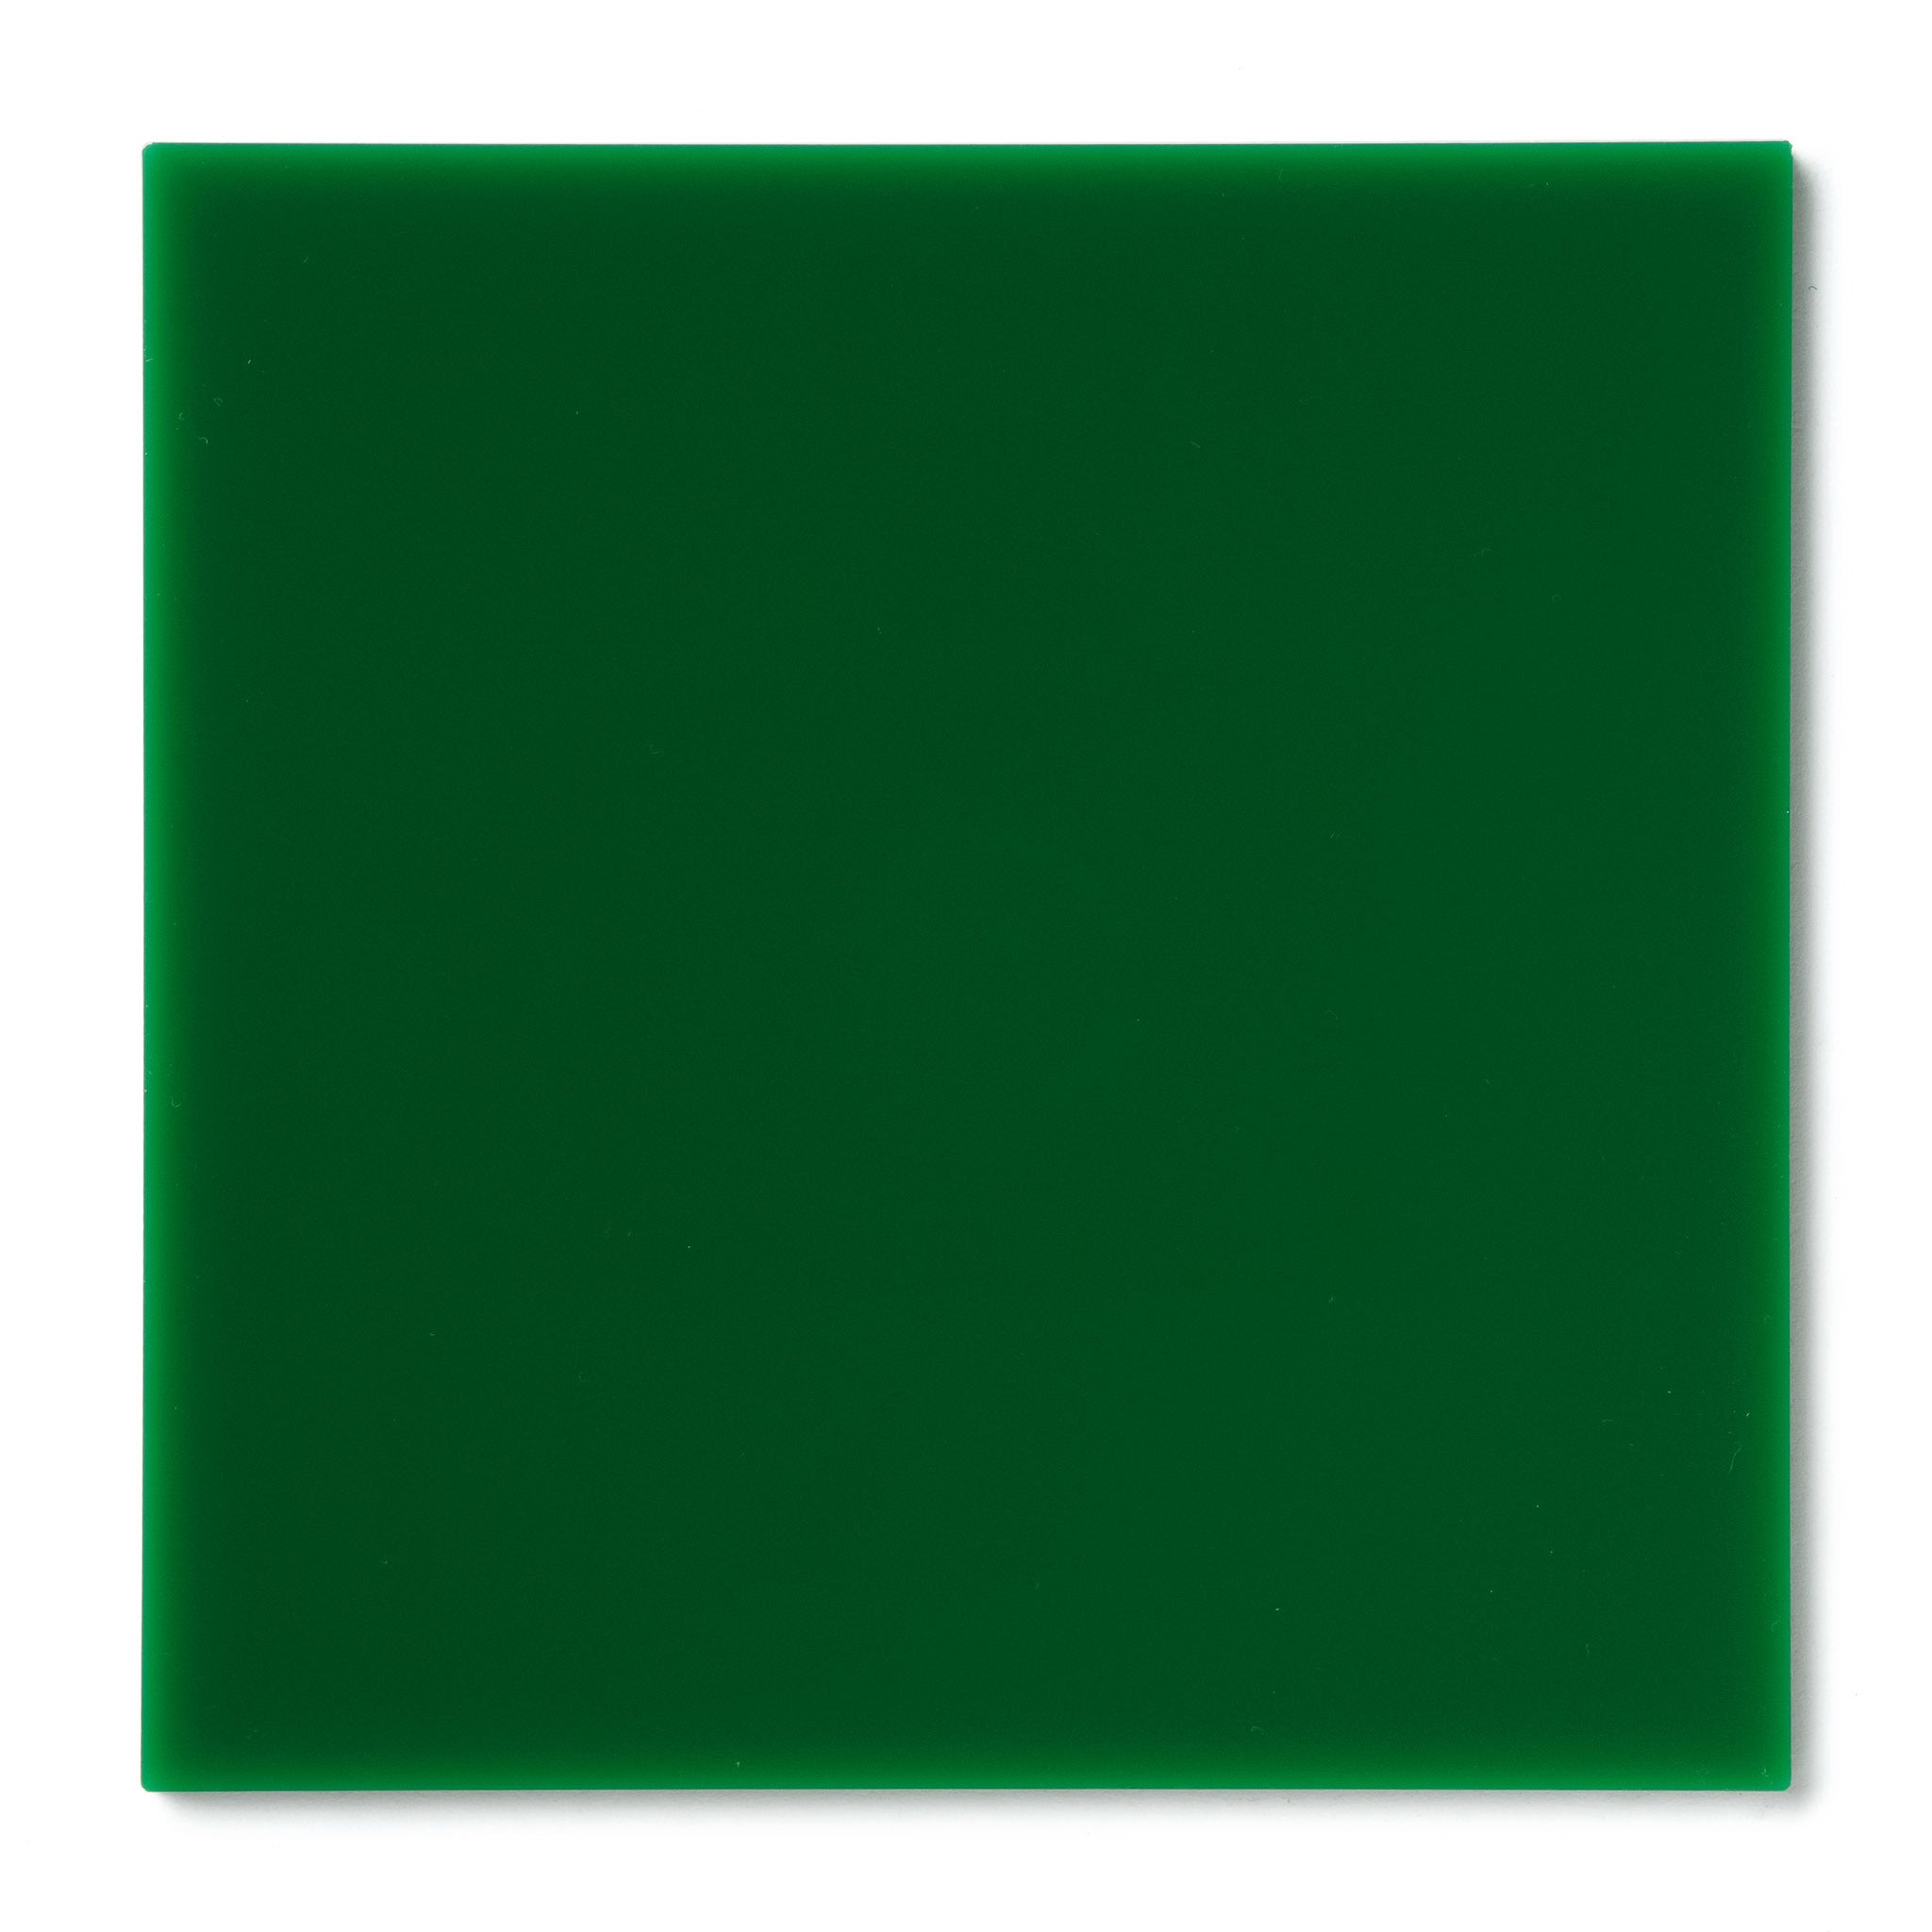 Green Opaque Acrylic Plexiglass Sheet | Canal Plastics Center